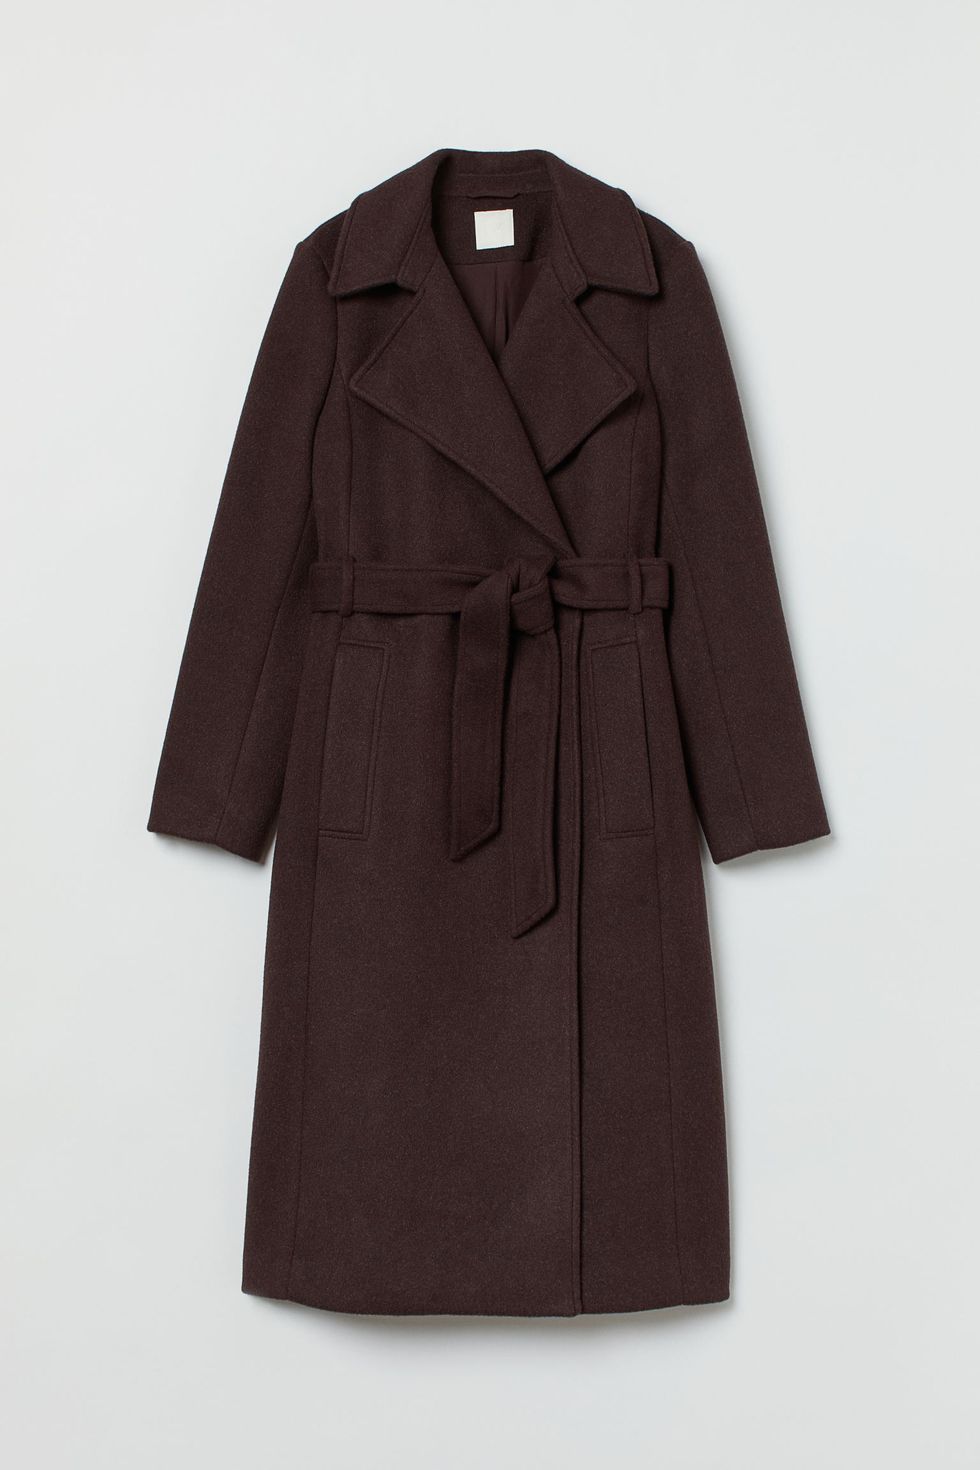 MODA: Siete abrigos imprescindibles de buena calidad, cómodos y estilosos  que encontrarás en H&M